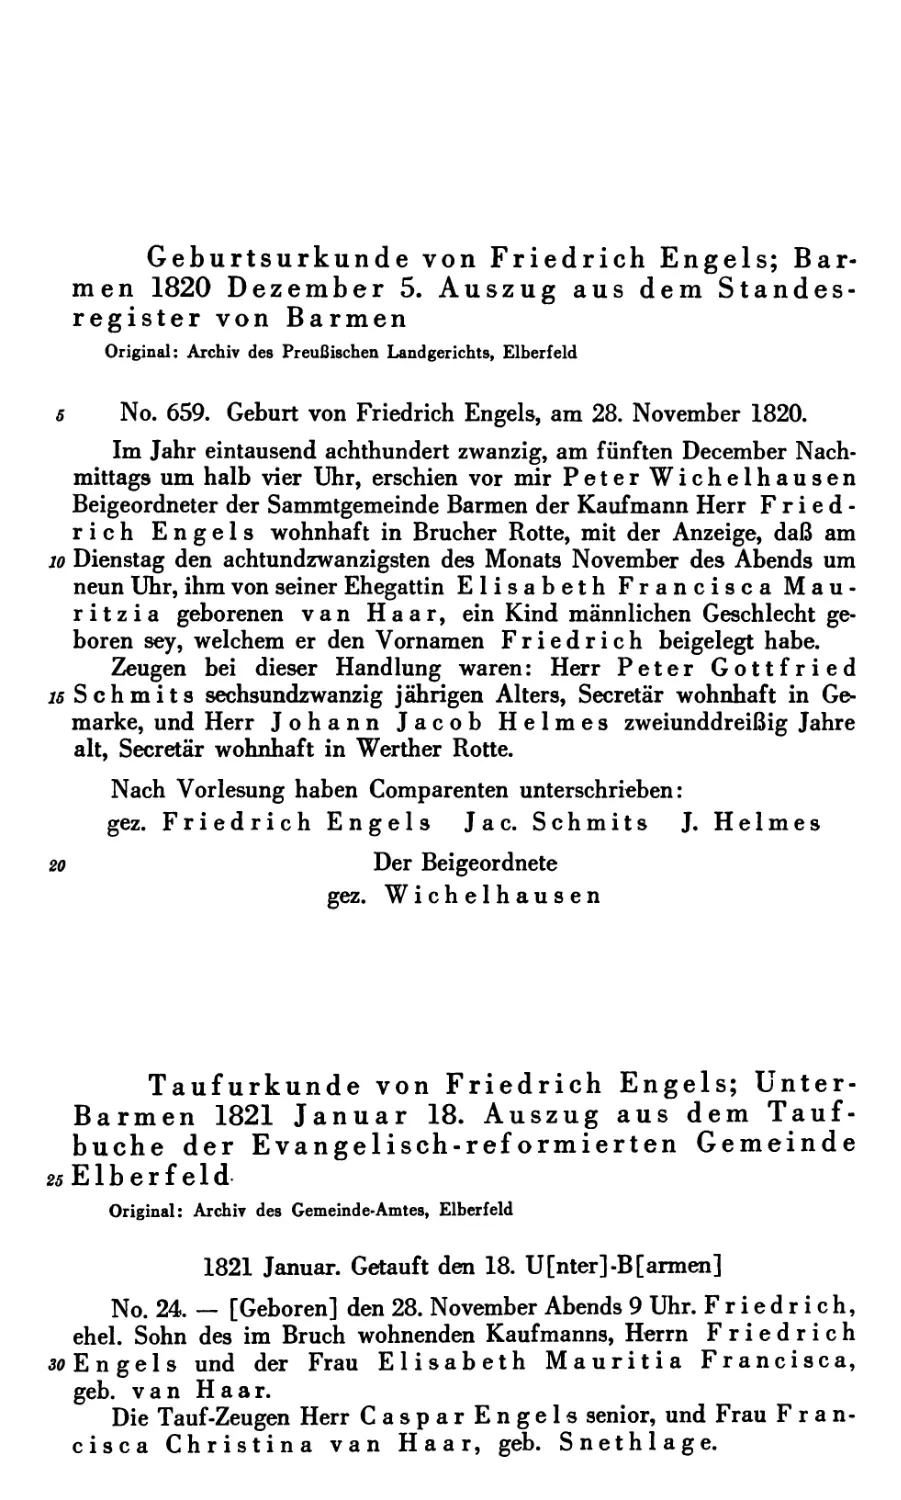 2. Taufurkunde von Friedrich Engels; Unter-Barmen 1821 Januar 18